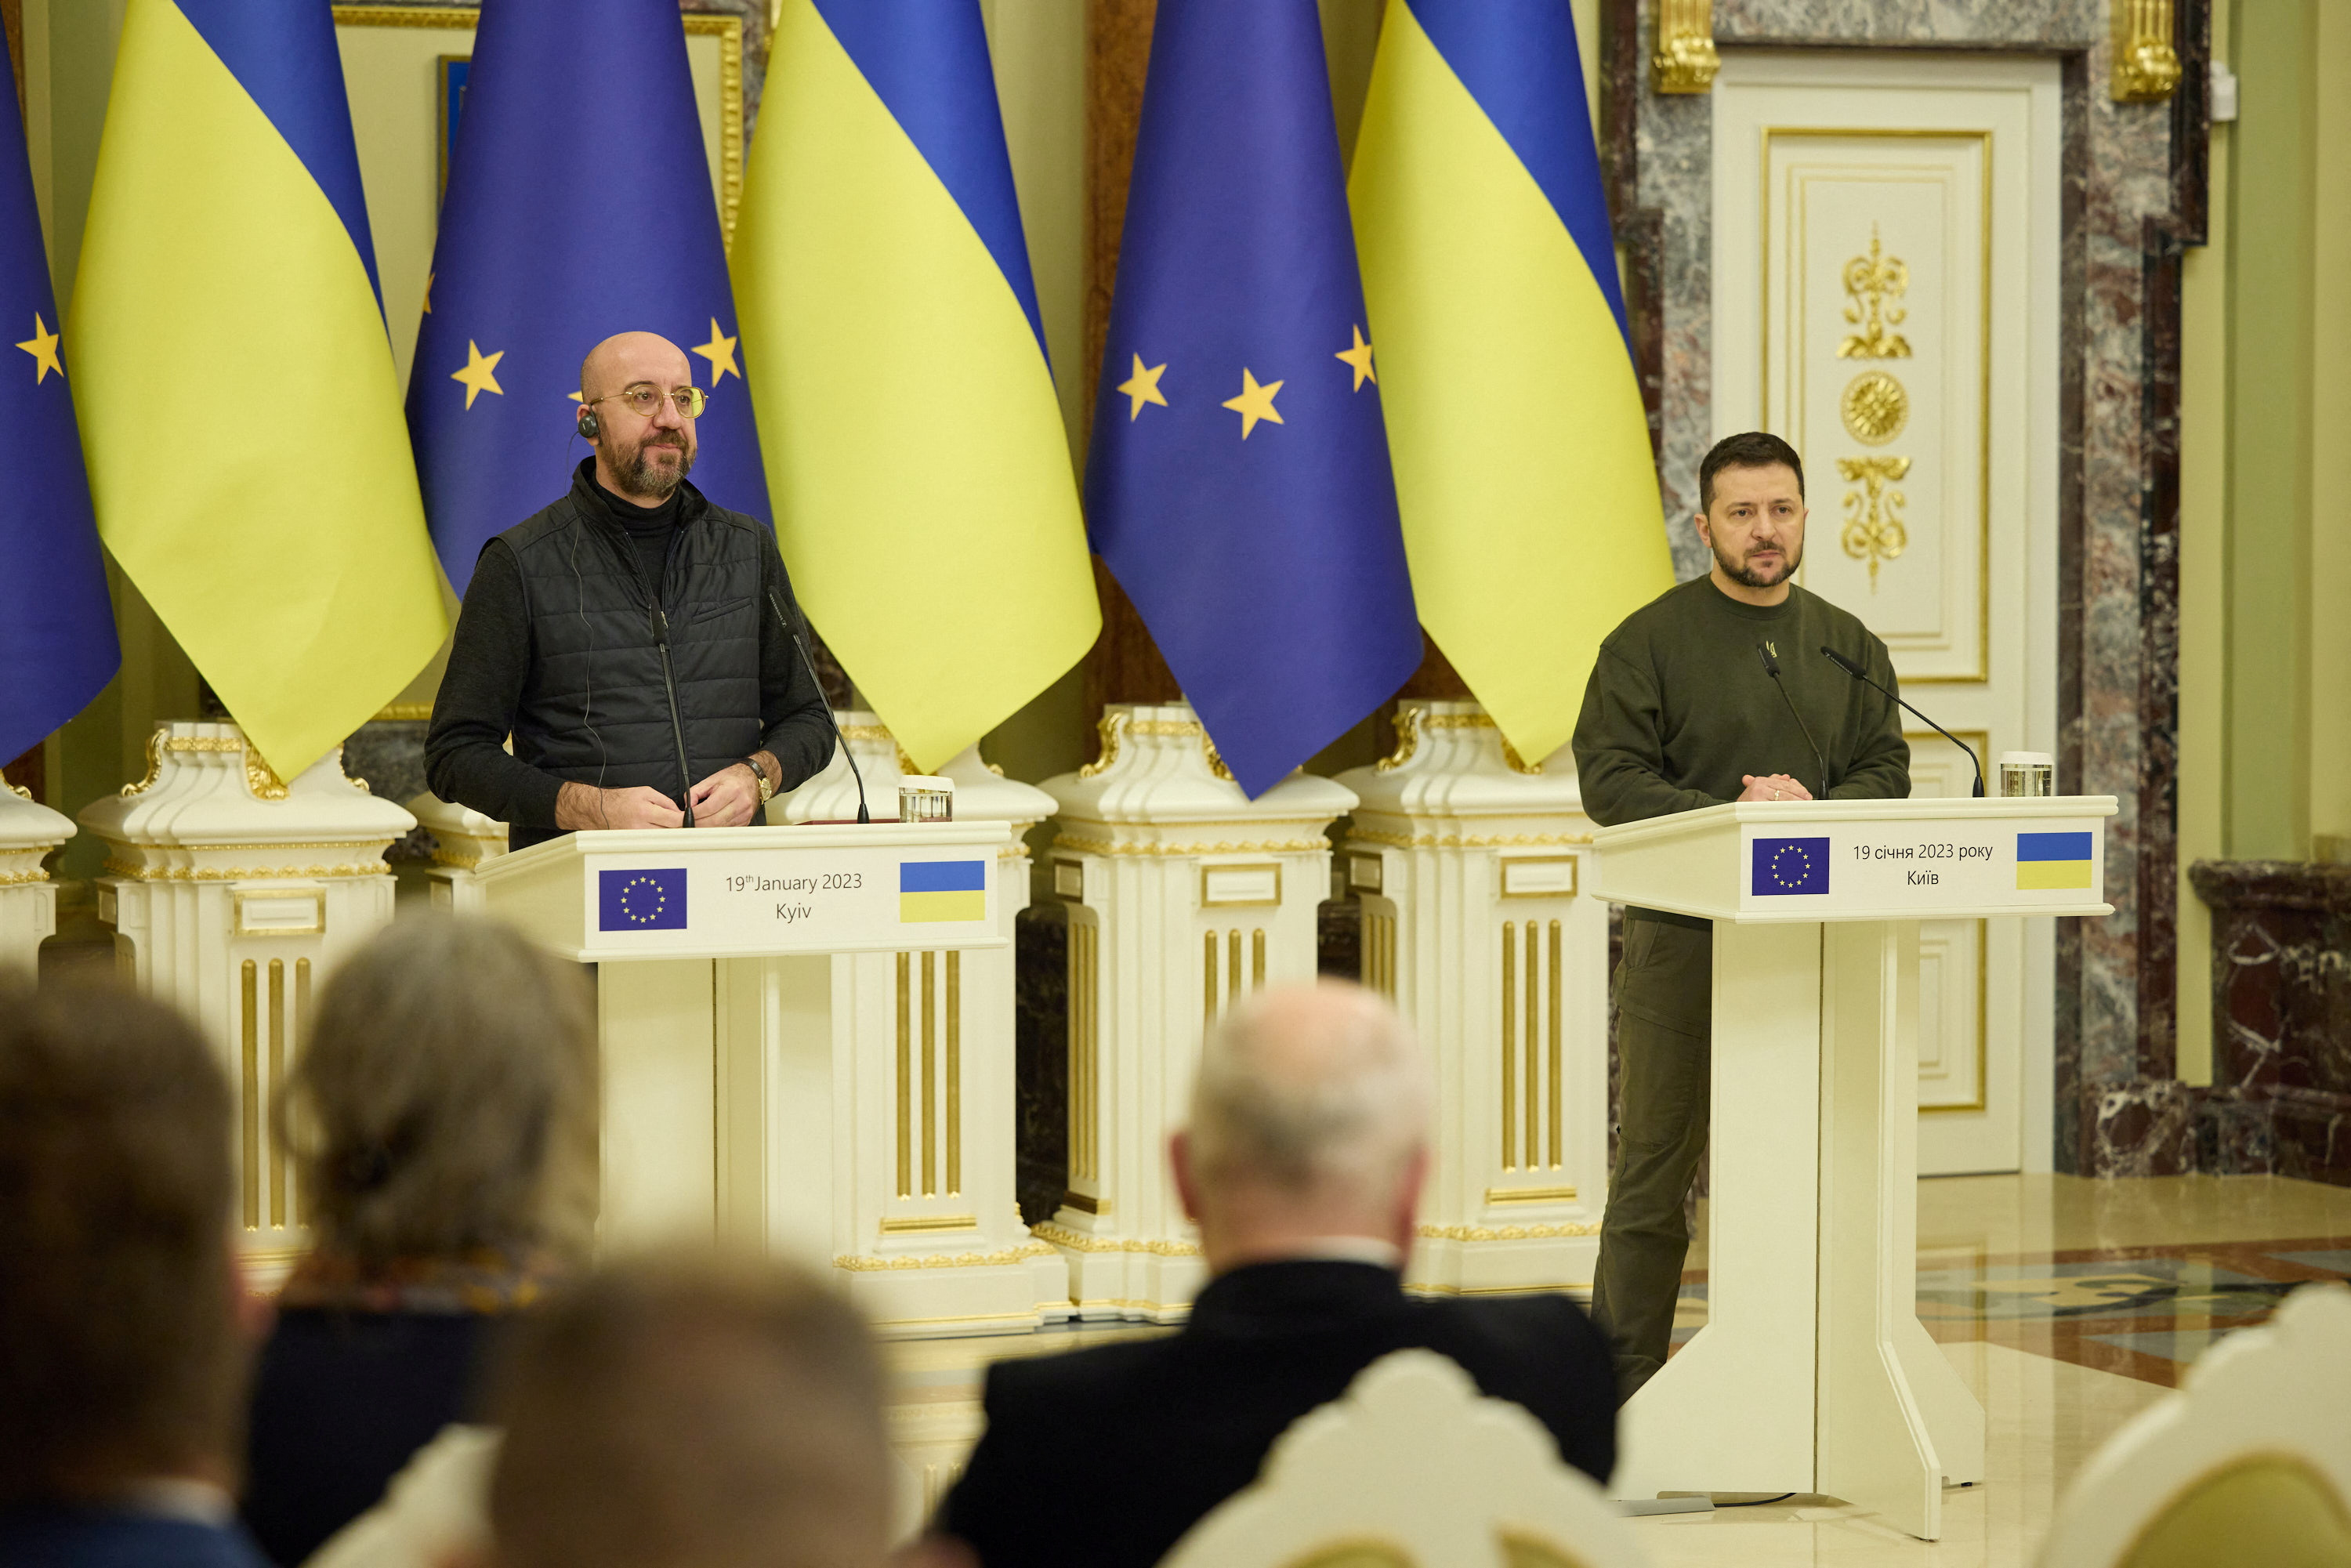 El próximo jueves, funcionarios ucranianos sostendrán una reunión de “consultas intergubernamentales” con la Comisión Europea (Ejecutivo de la UE), de acuerdo con lo informado por Shmygal. (REUTERS)